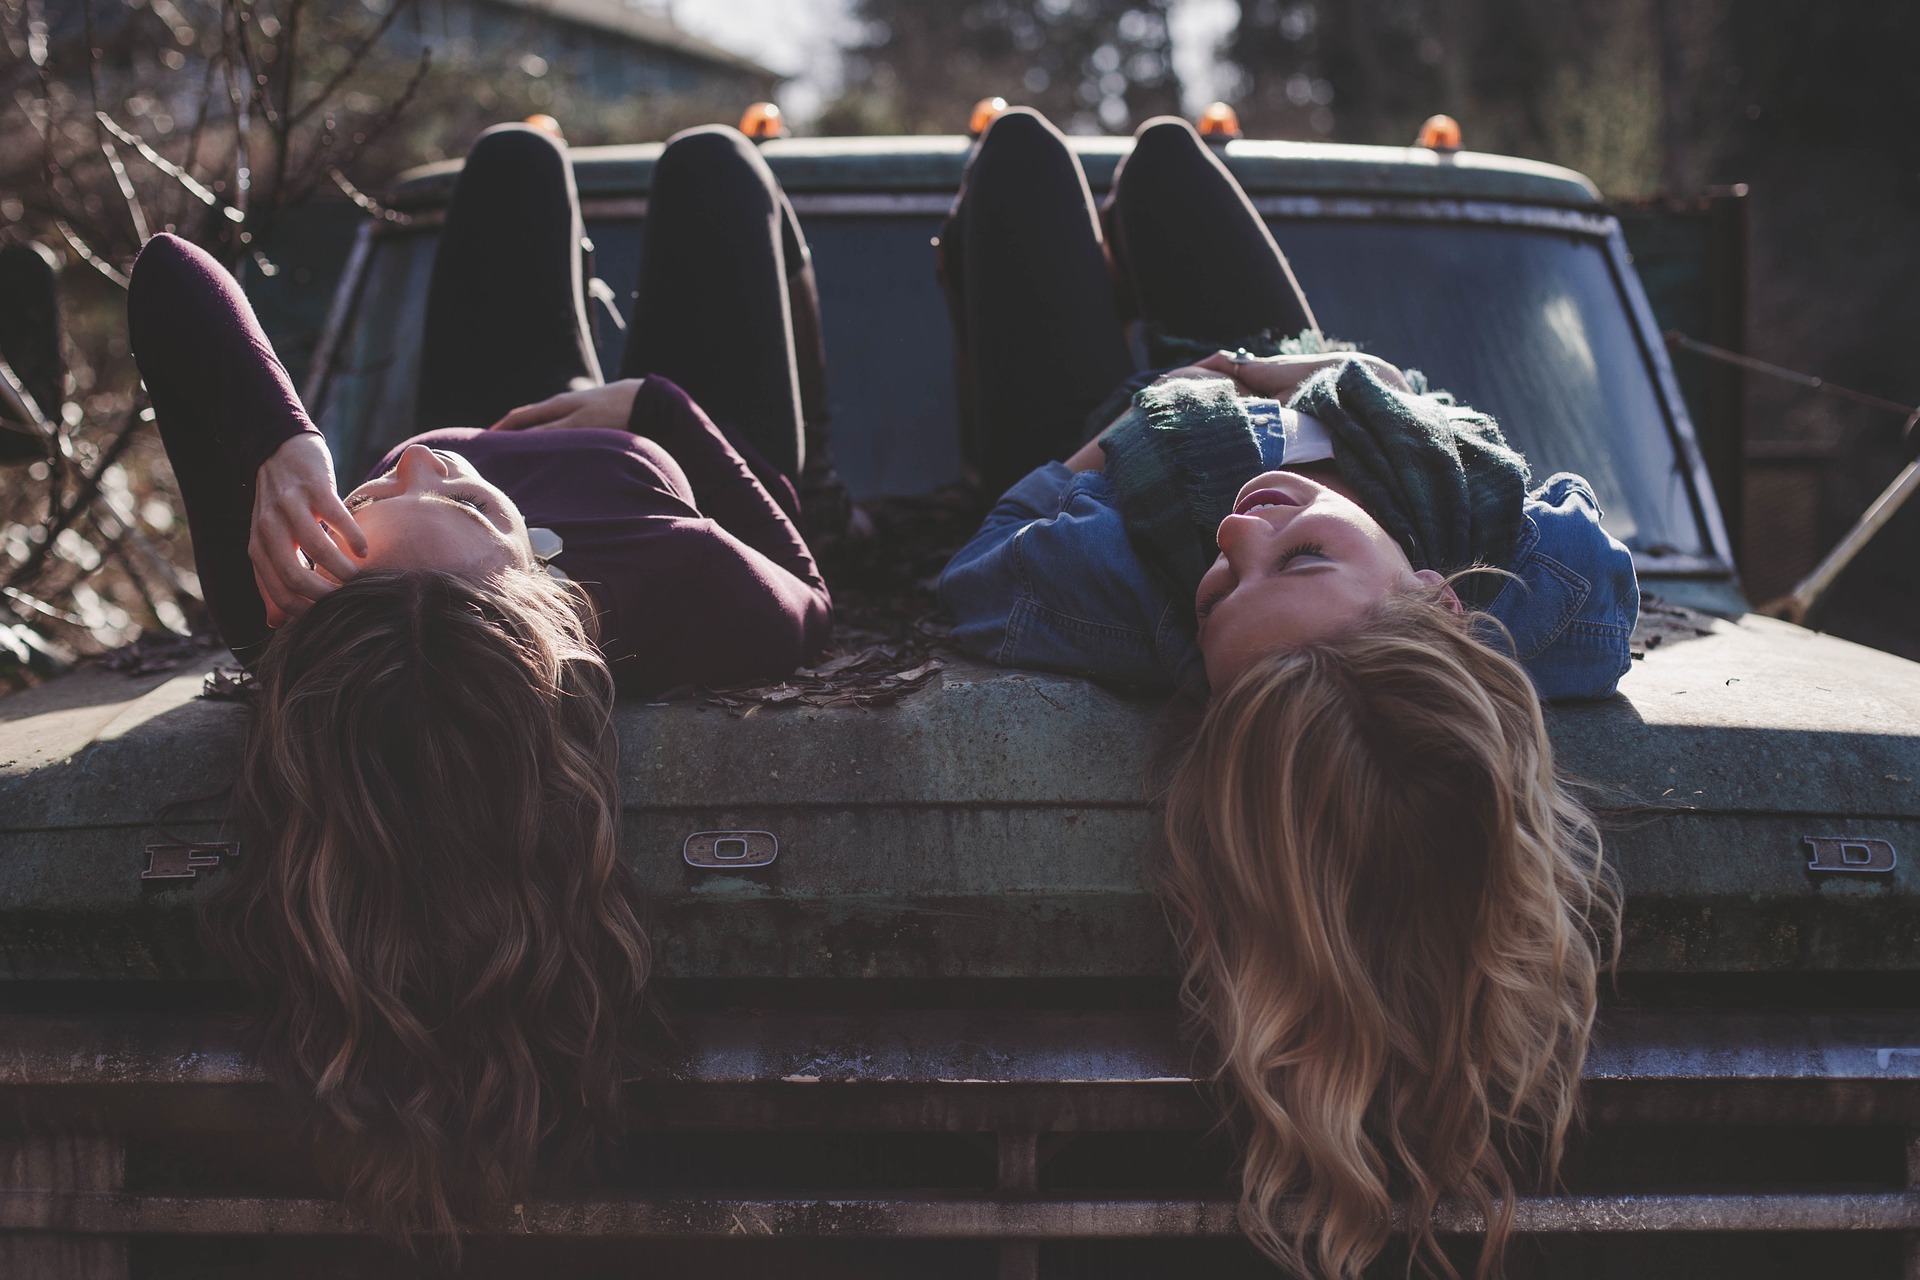 İki tane genç kız bir arabanın bagaj kapağına yatmış sohbet ediyorlar.